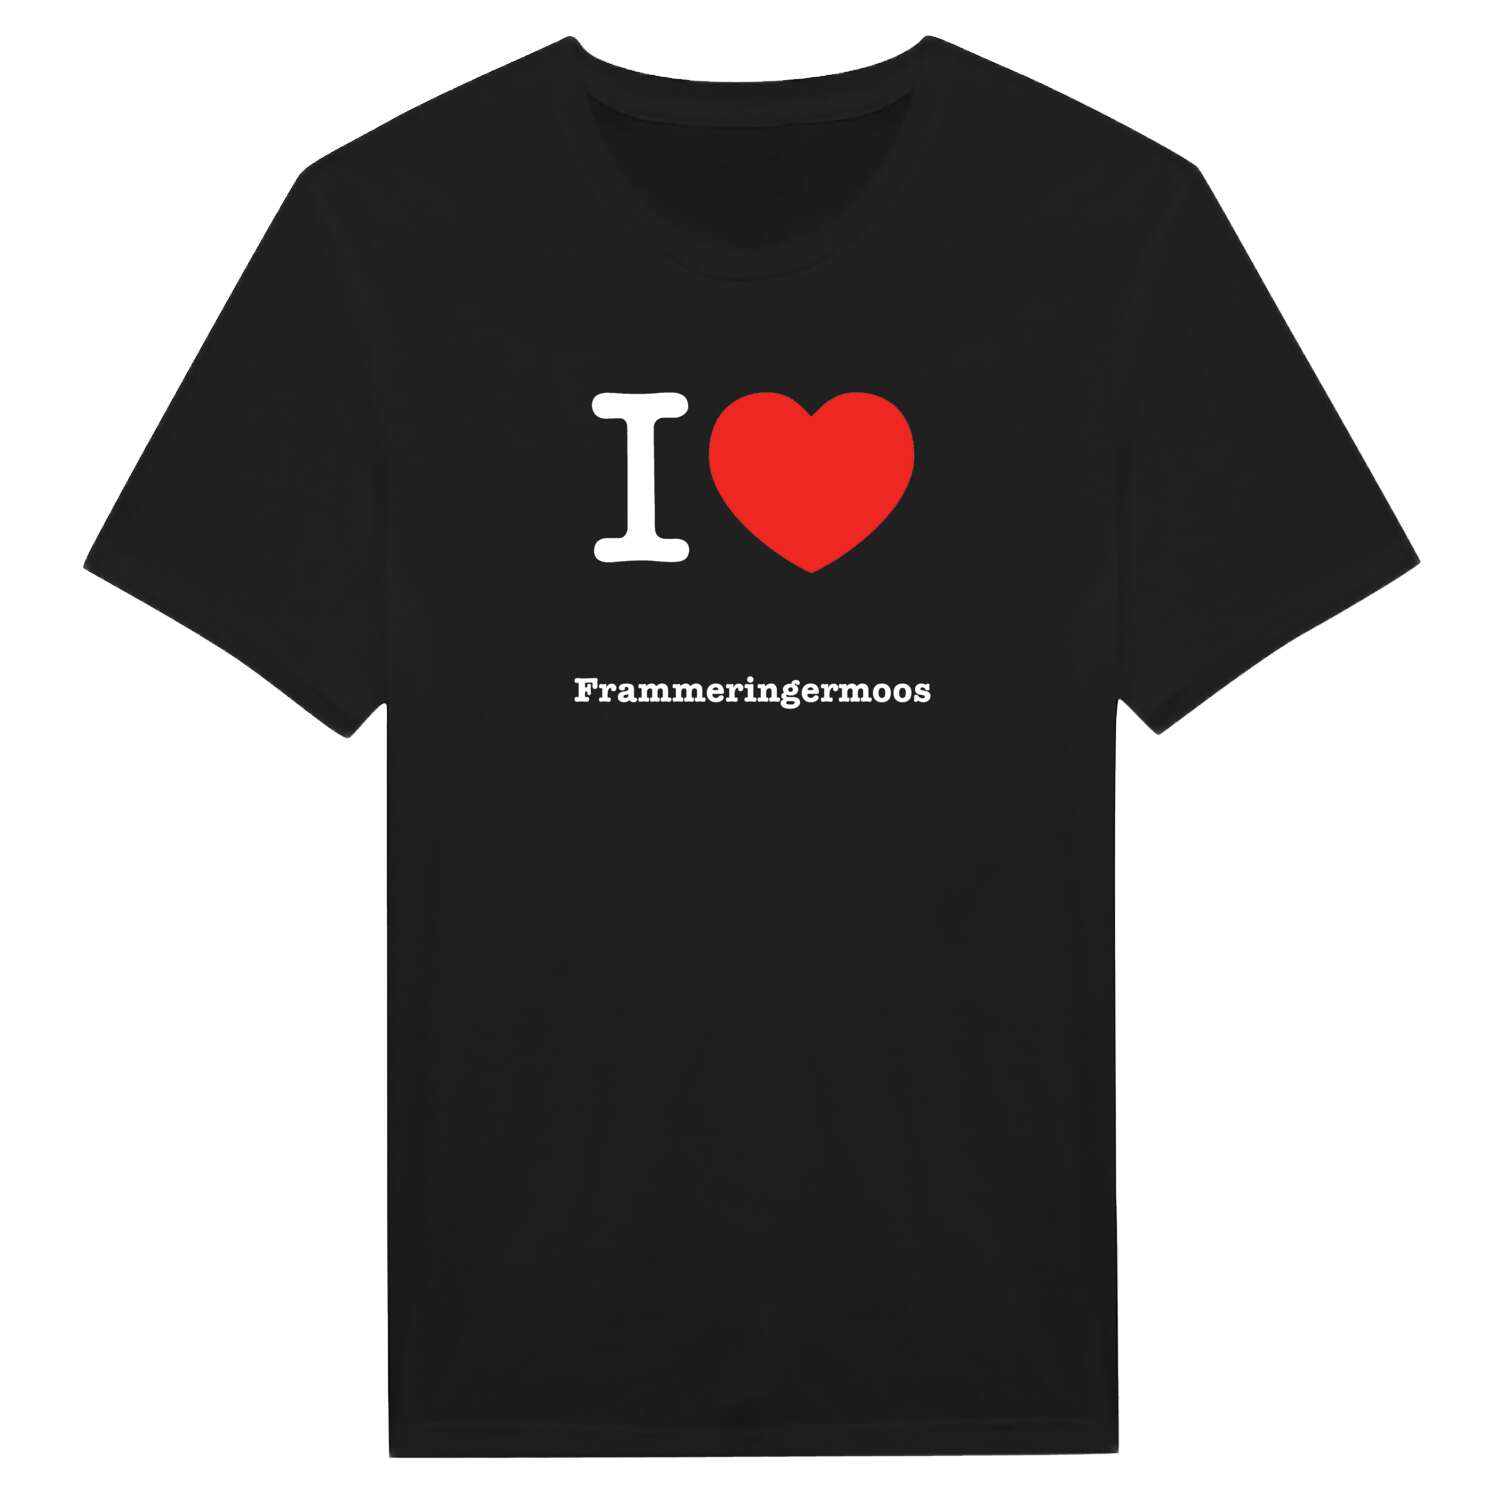 Frammeringermoos T-Shirt »I love«